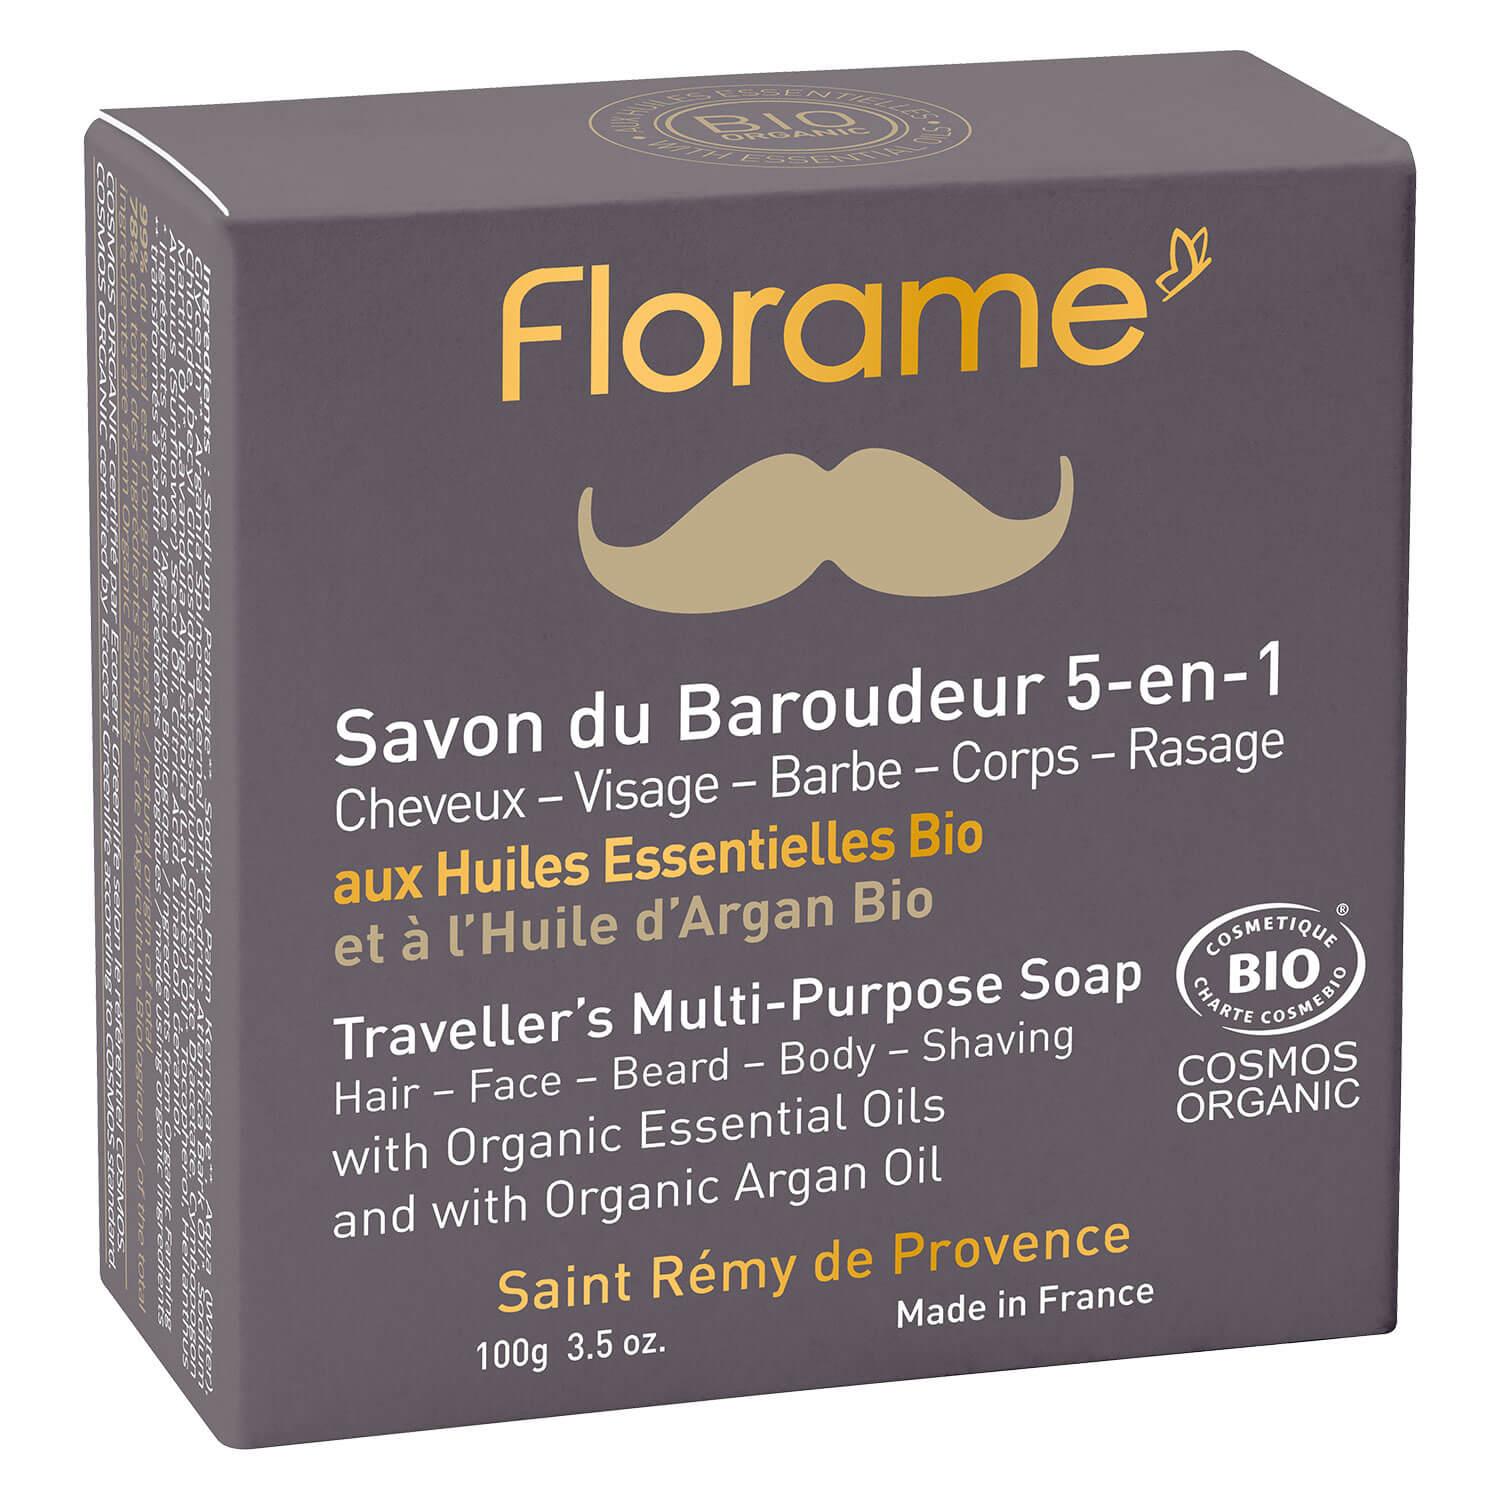 Florame Homme - Savon Du Baroudeur 5-en-1